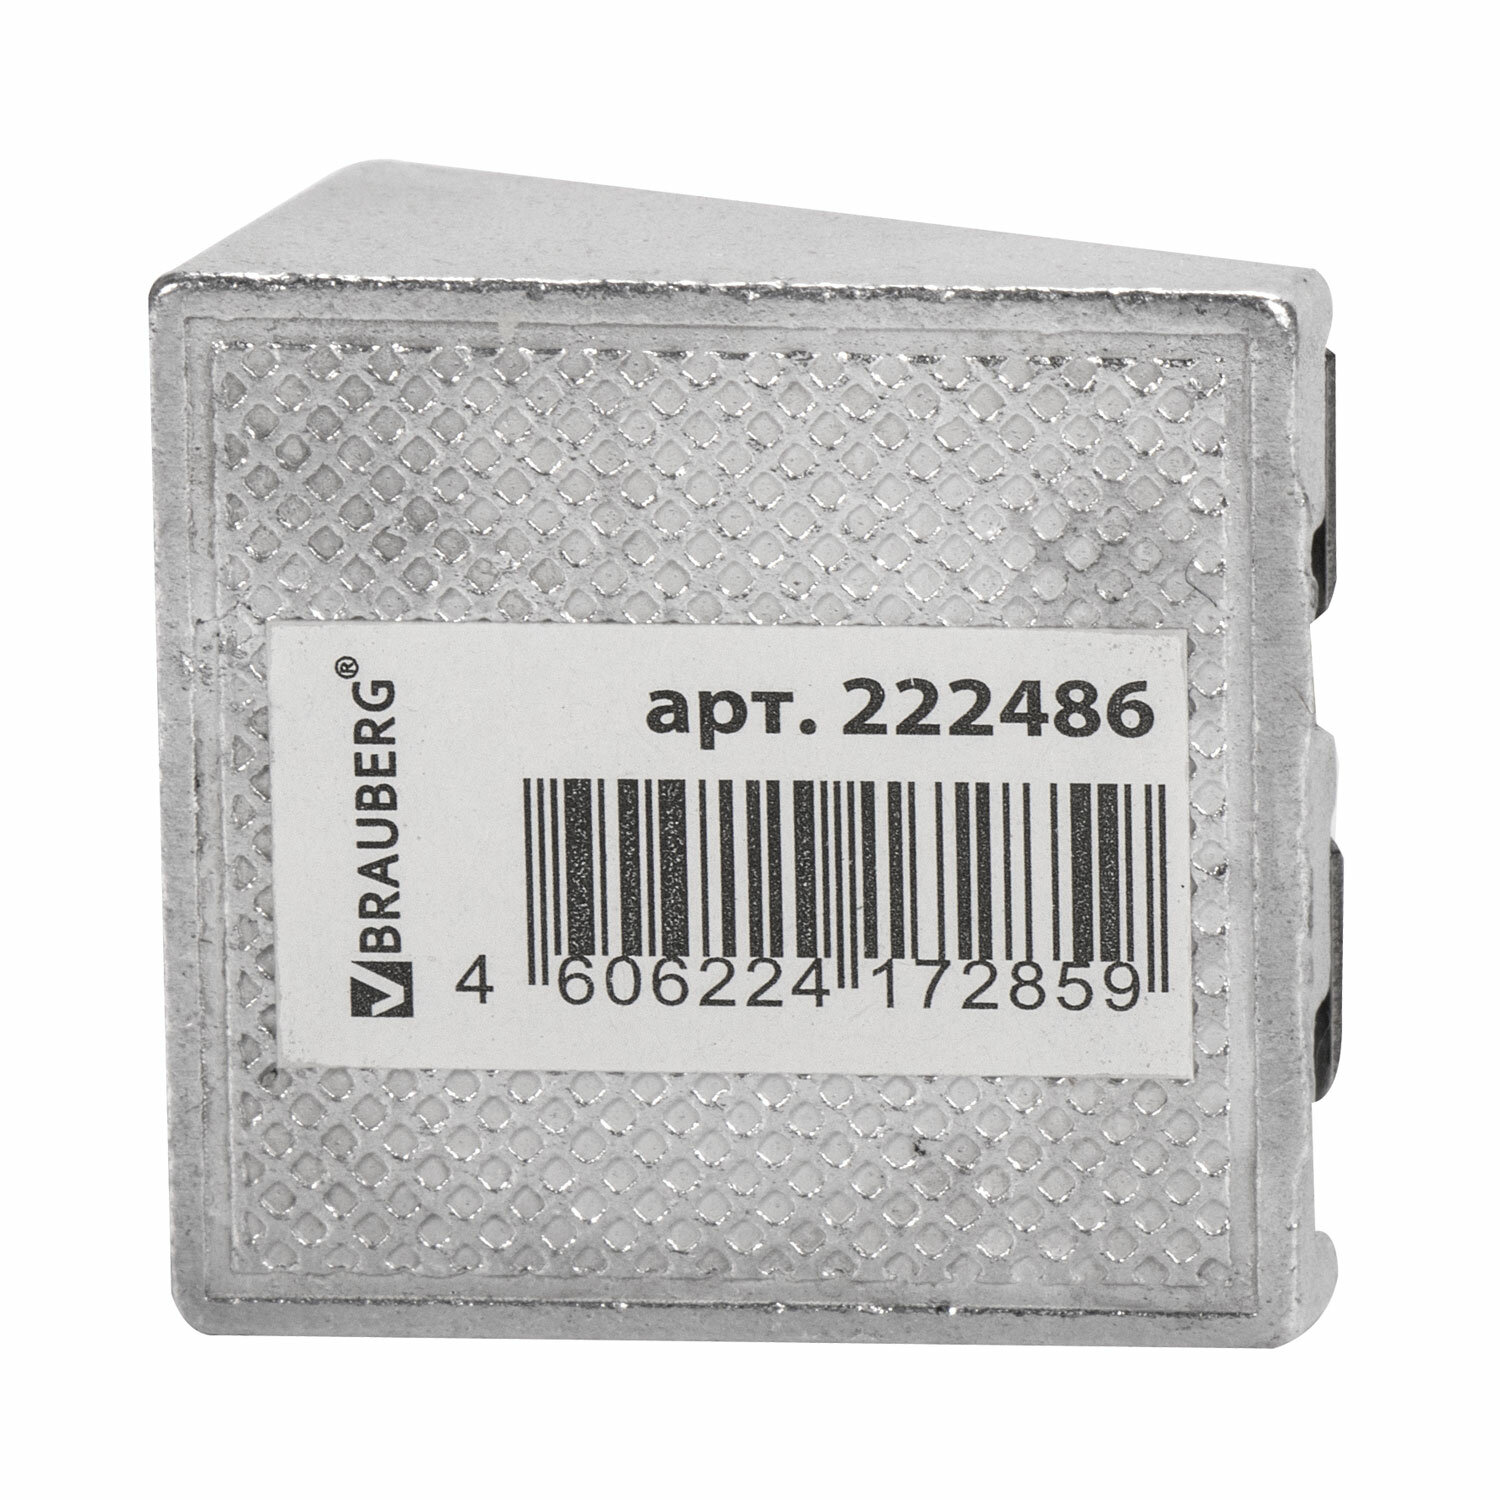 Точилка BRAUBERG "Agent 002", металлическая клиновидная, 2 отверстия, в карт. коробке, 222486